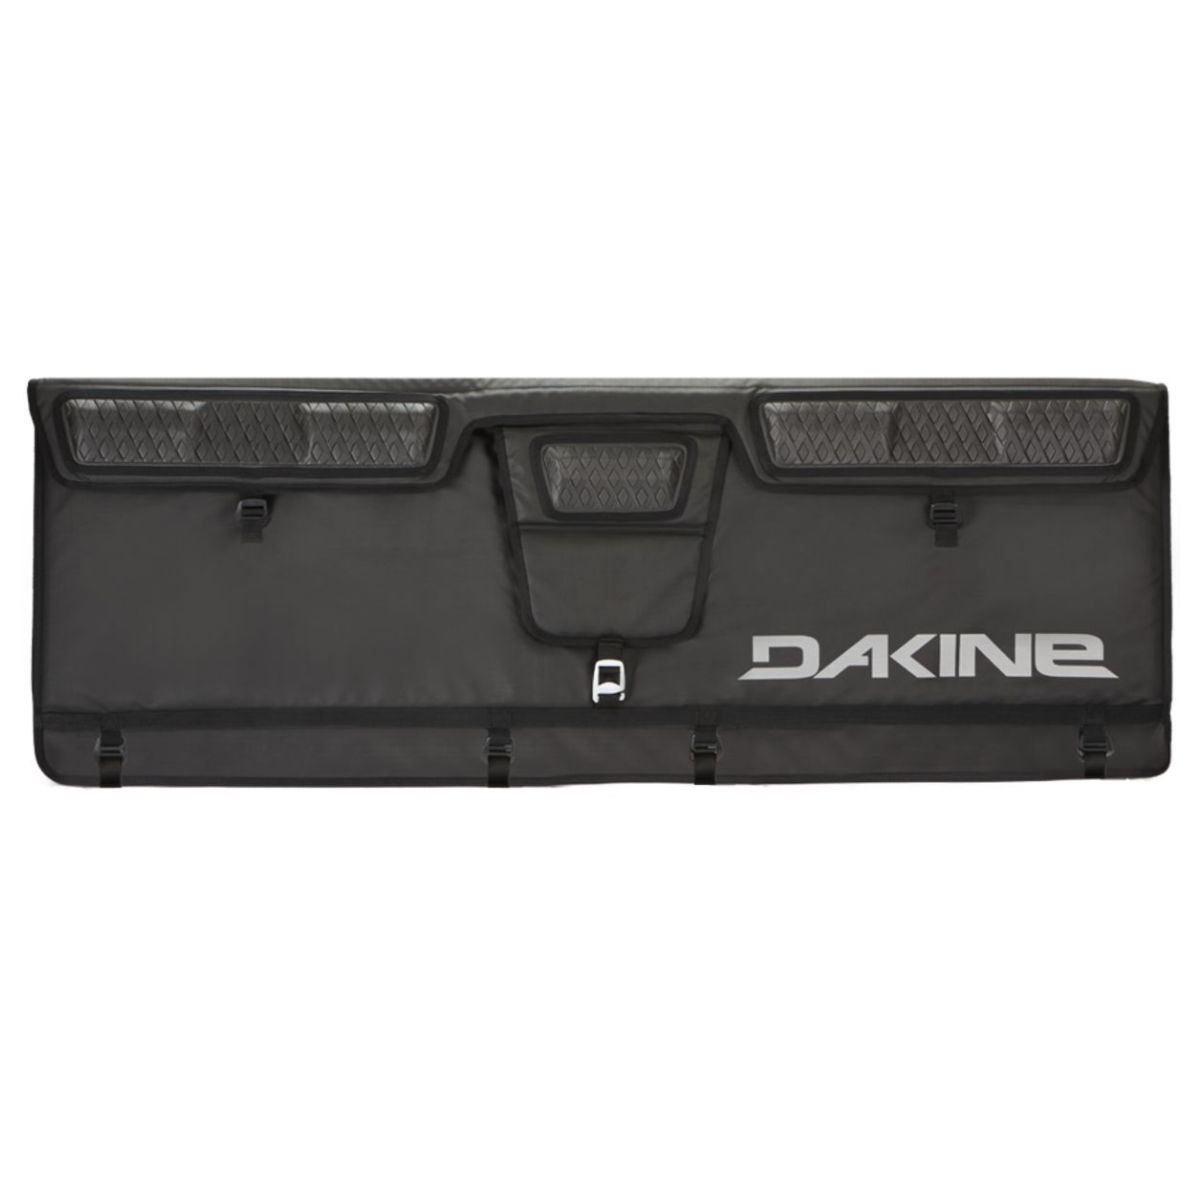 Protecteur pour boite de camion Dakine Universal Pickup Pad Small Noir